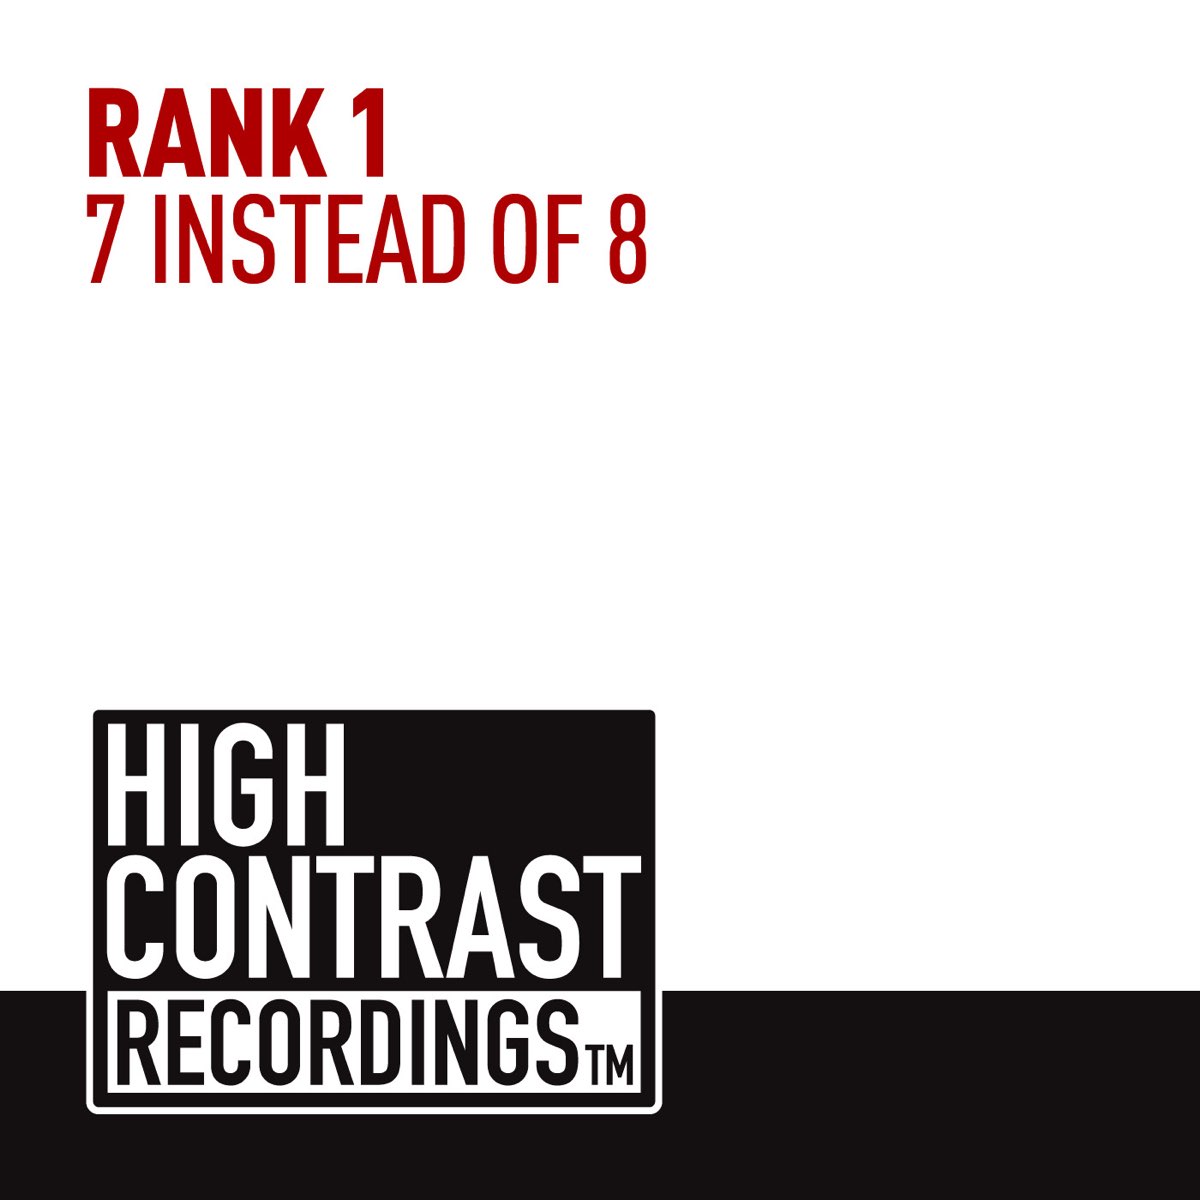 Rank 1 исполнитель группа. High contrast recordings logo. Песня rank